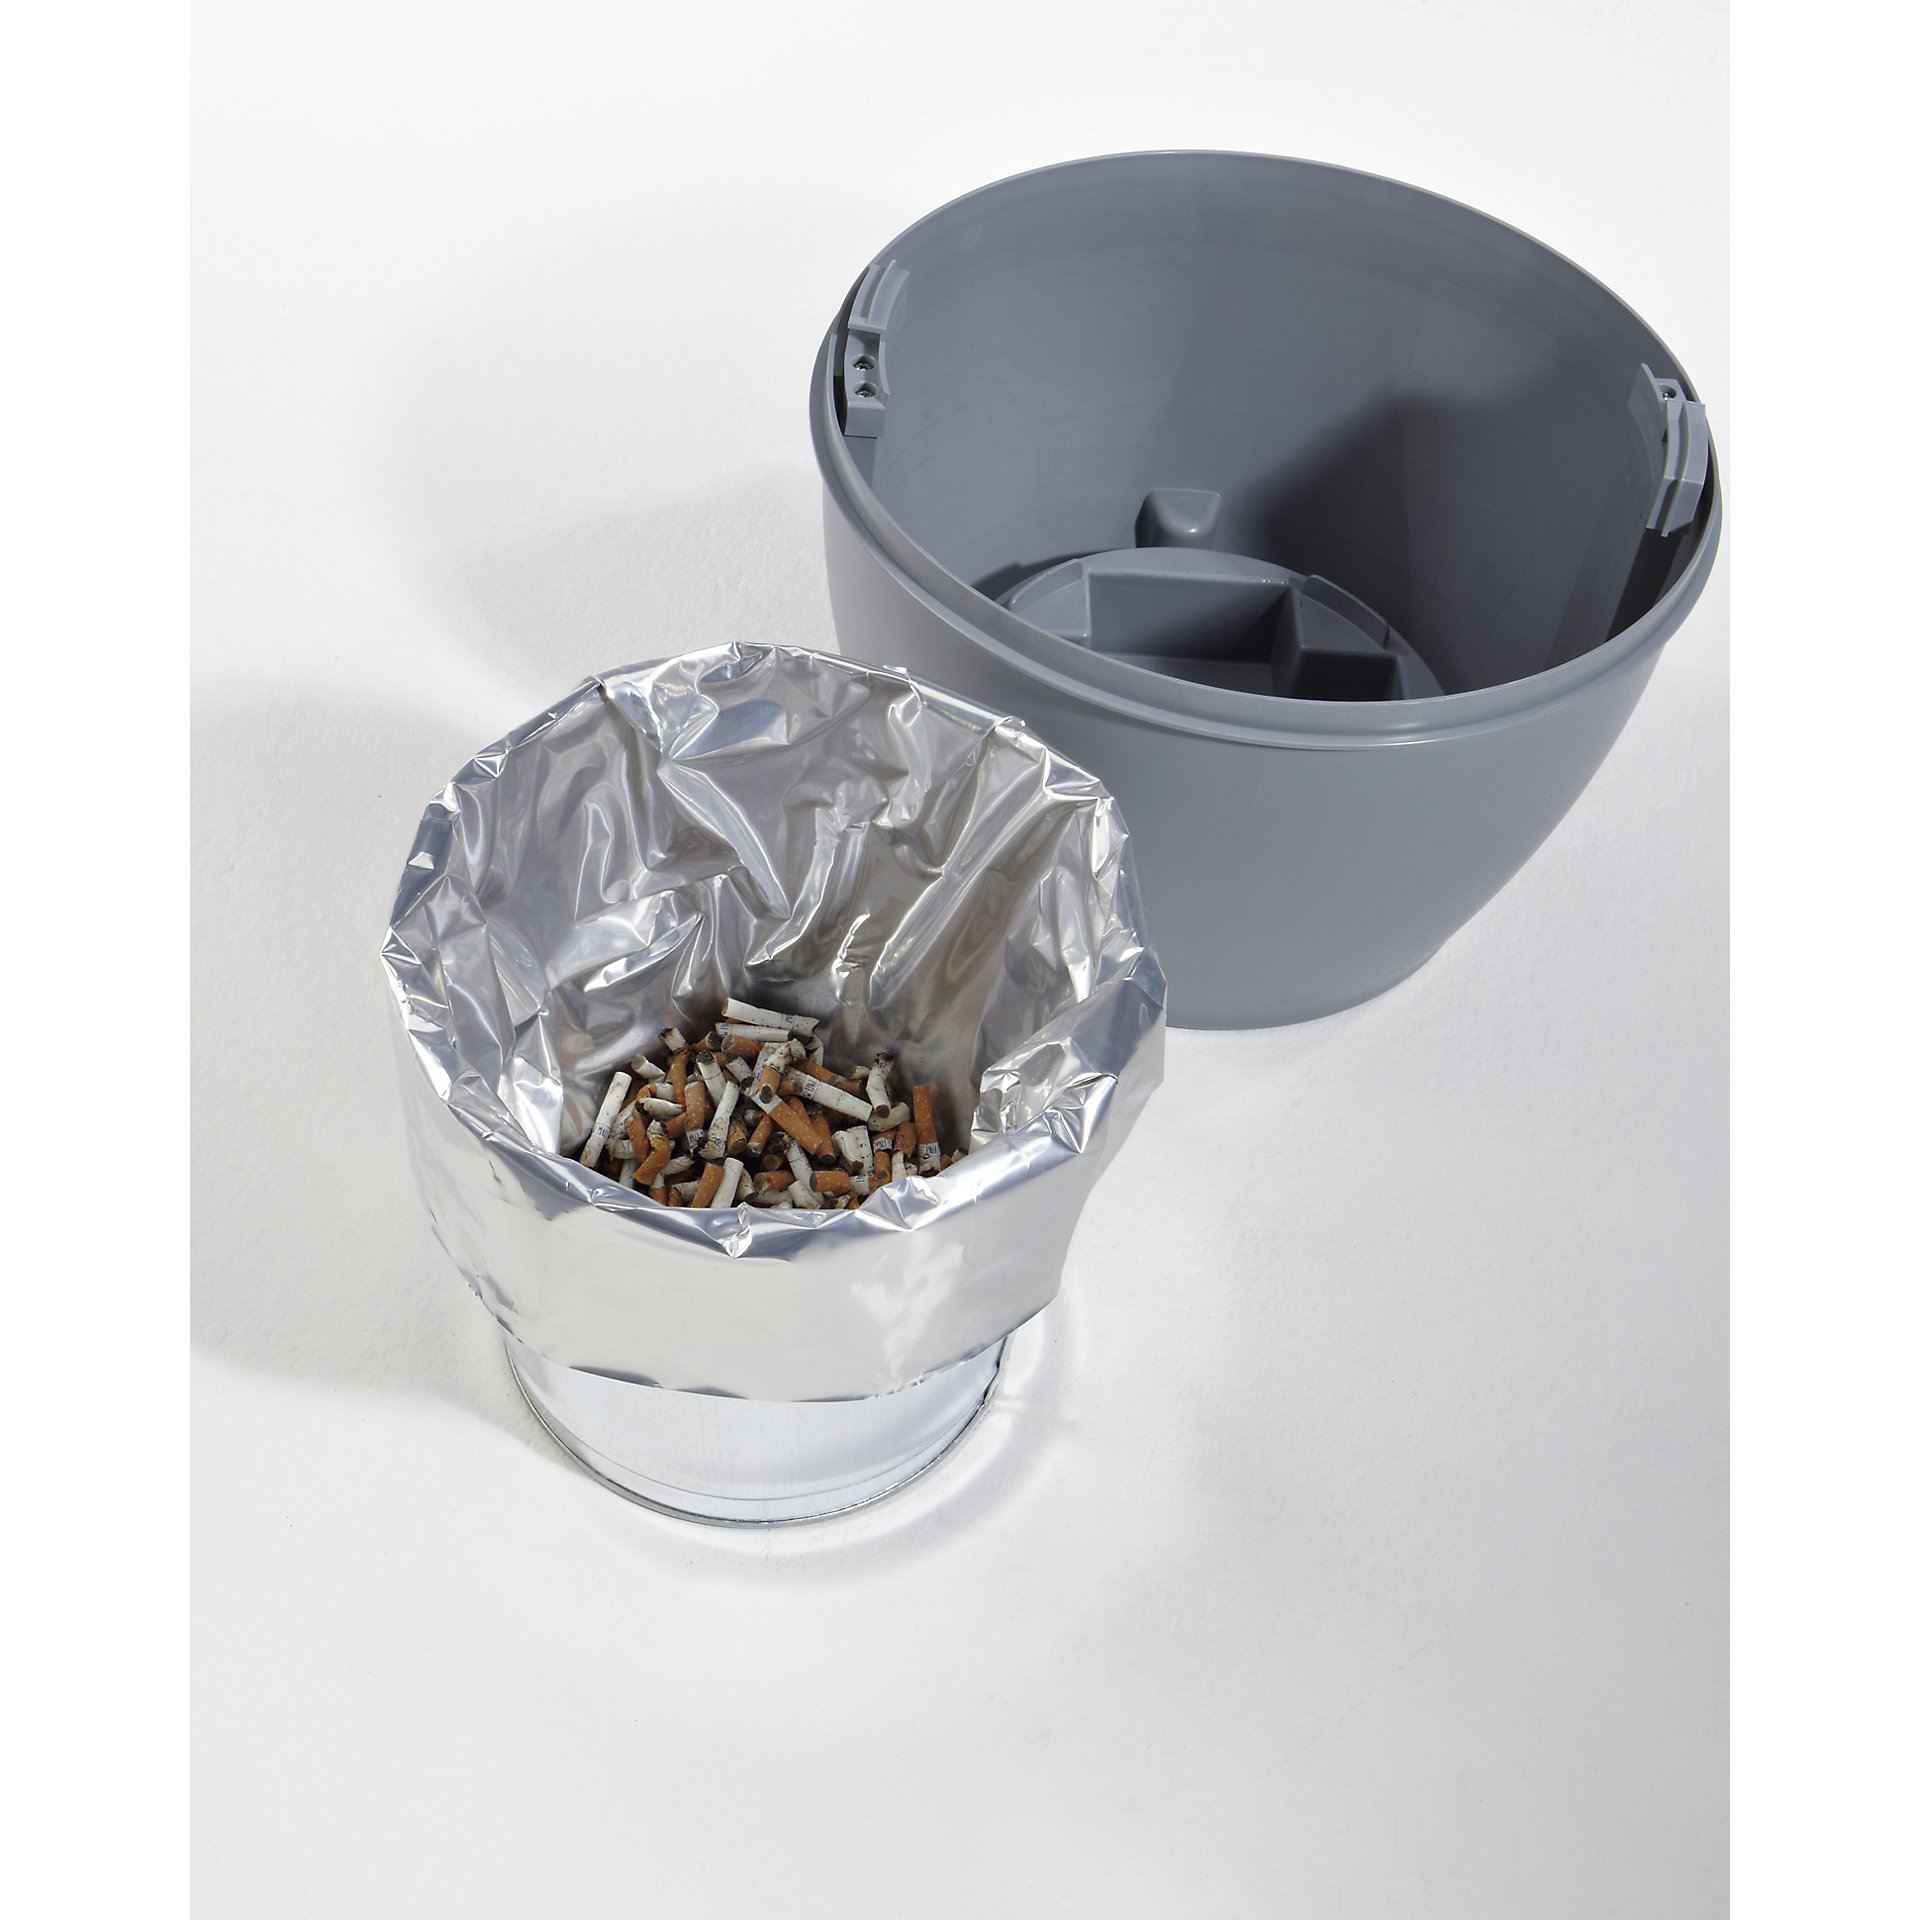 Justrite Sicherheits-Standascher aus Kunststoff Elite Smoker Cease Fire® | 15 Liter Innenbehälter, selbstlöschend | HxB 97x31cm | Beige